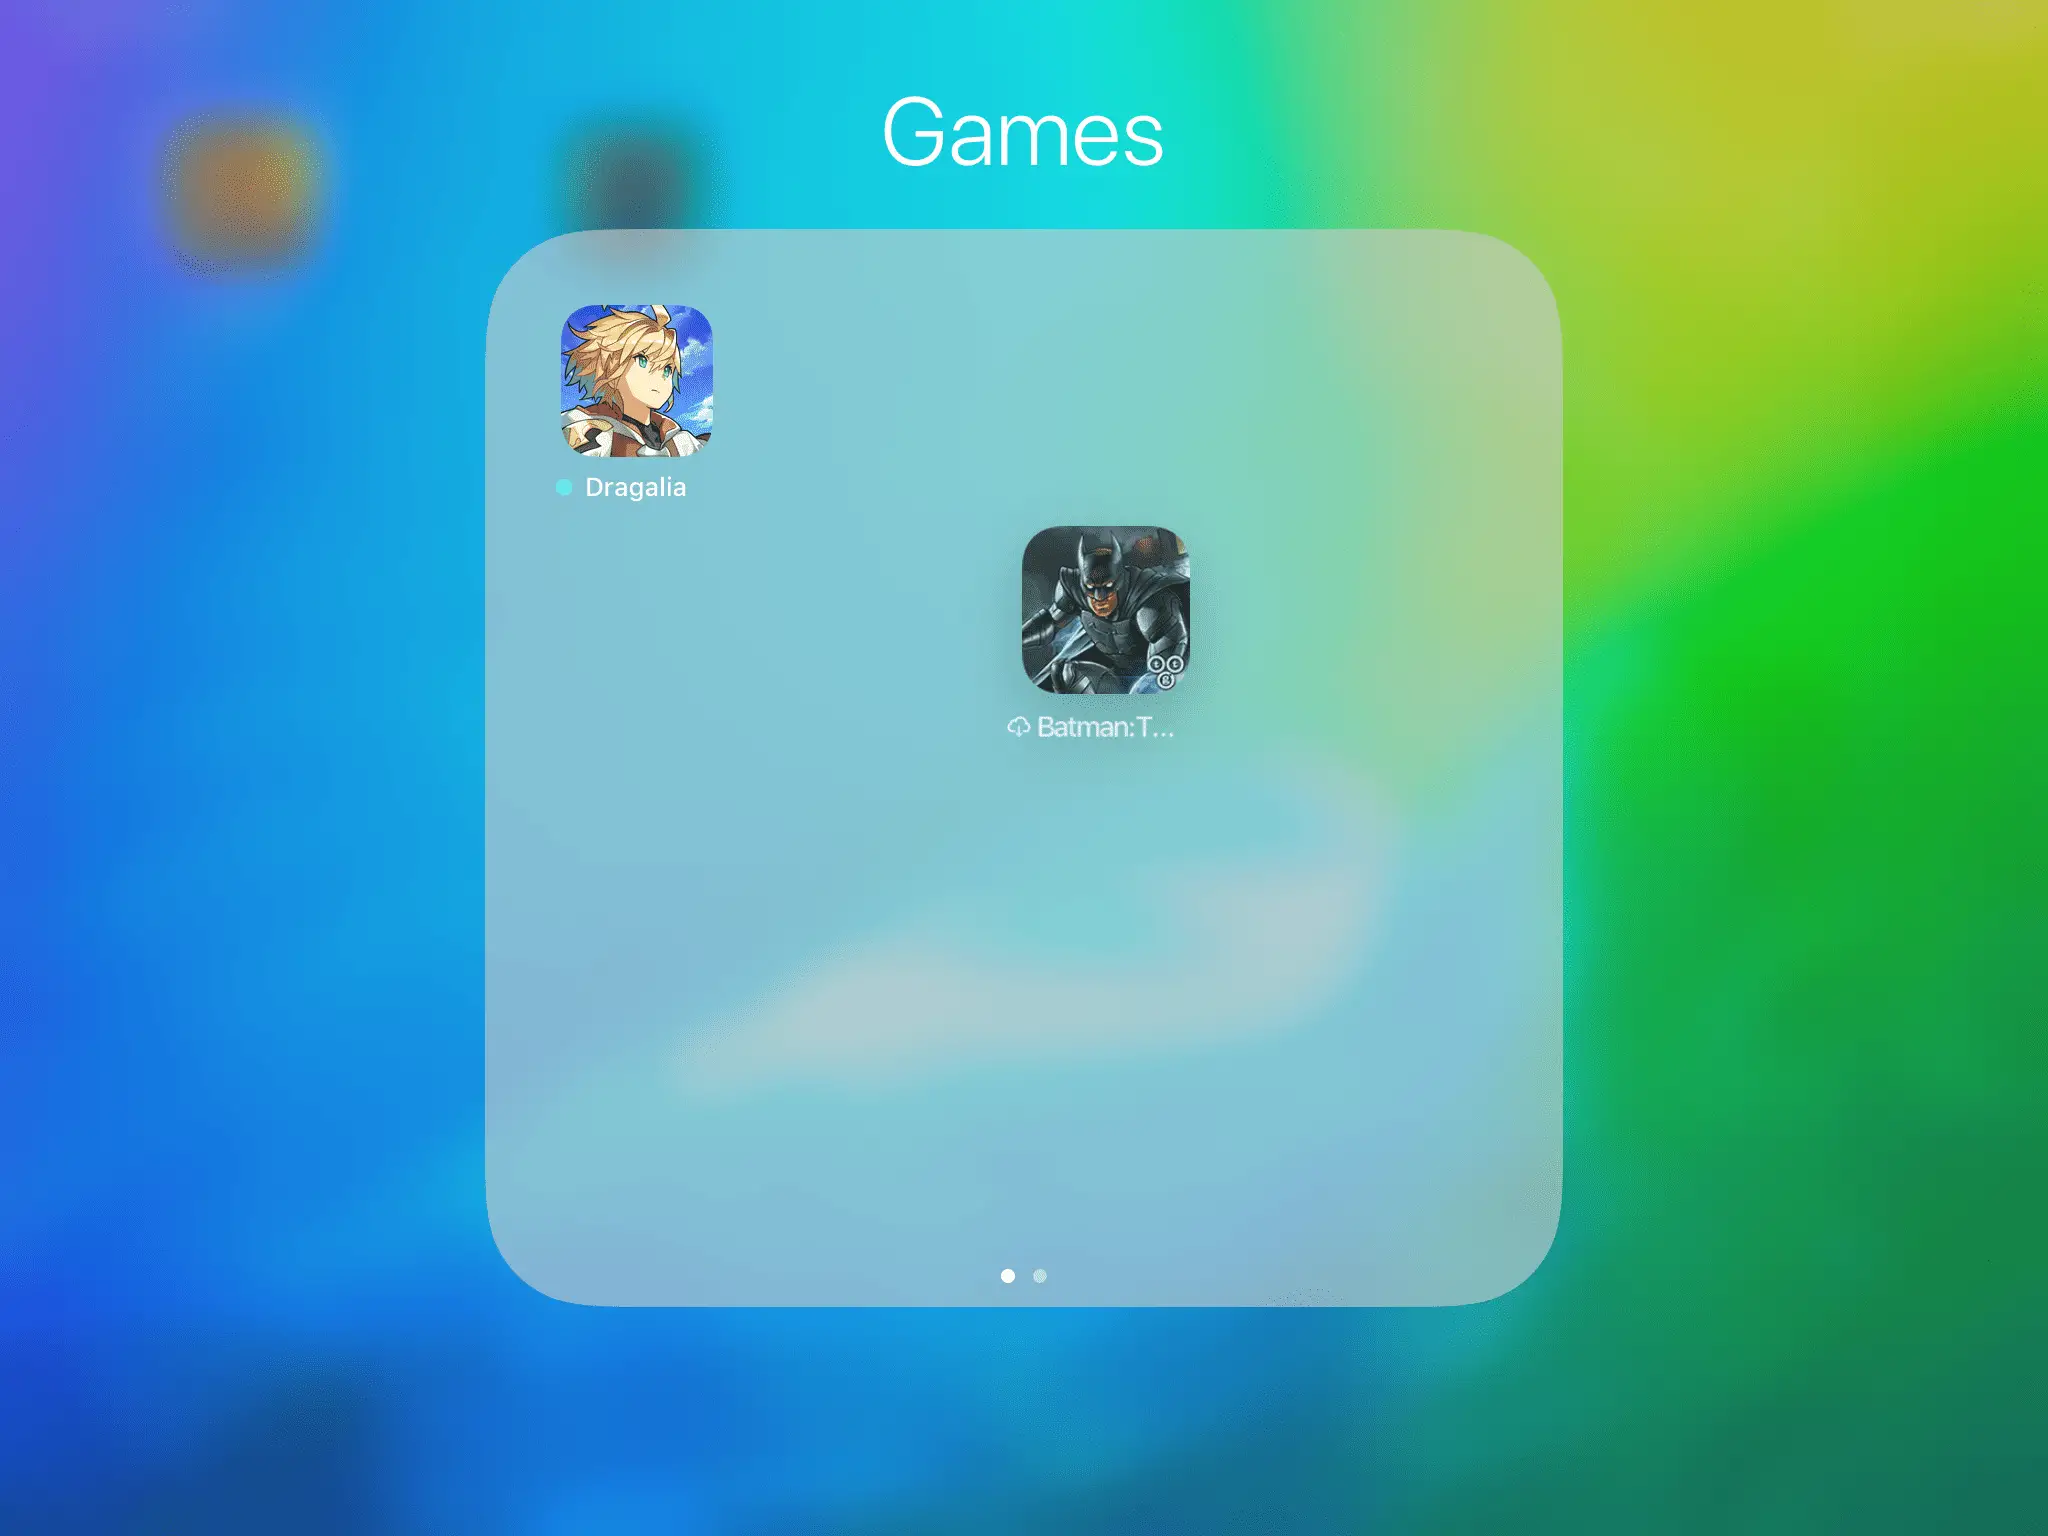 Pasta "Jogos" criada ao arrastar o jogo do Batman para cima do ícone do jogo Dragalia no iPad